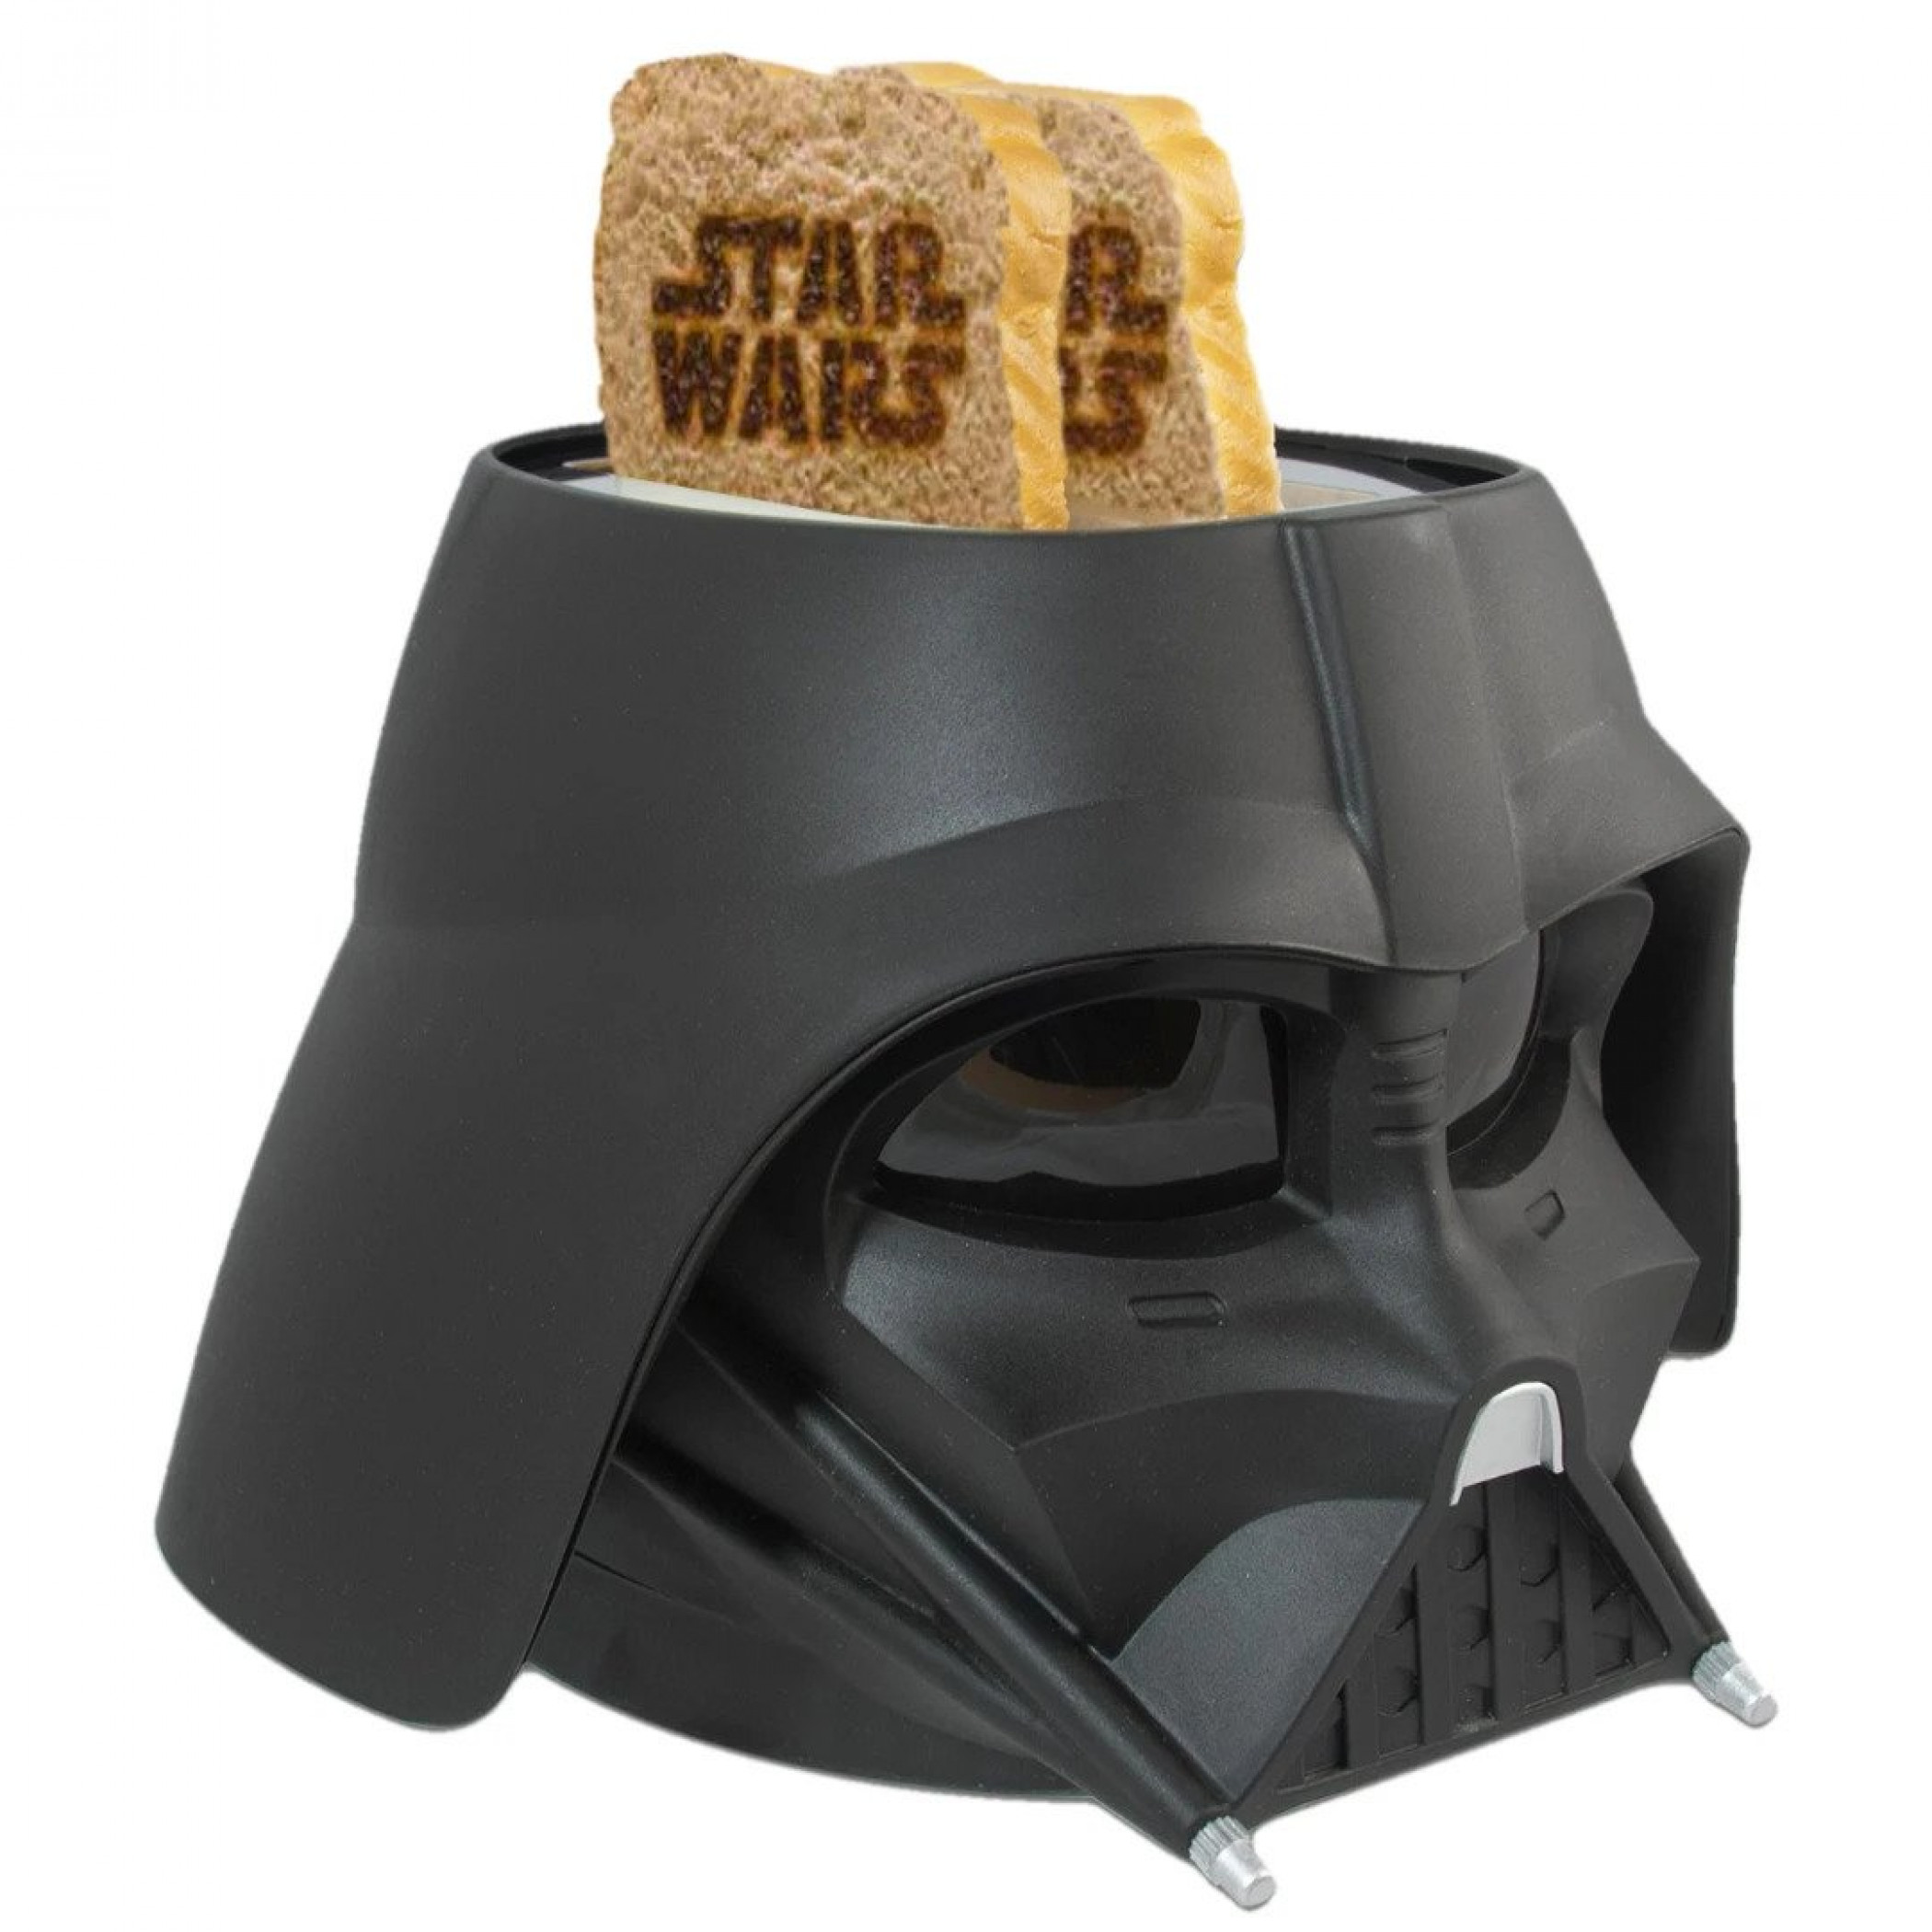 Star Wars Darth Vader Helmet Toaster